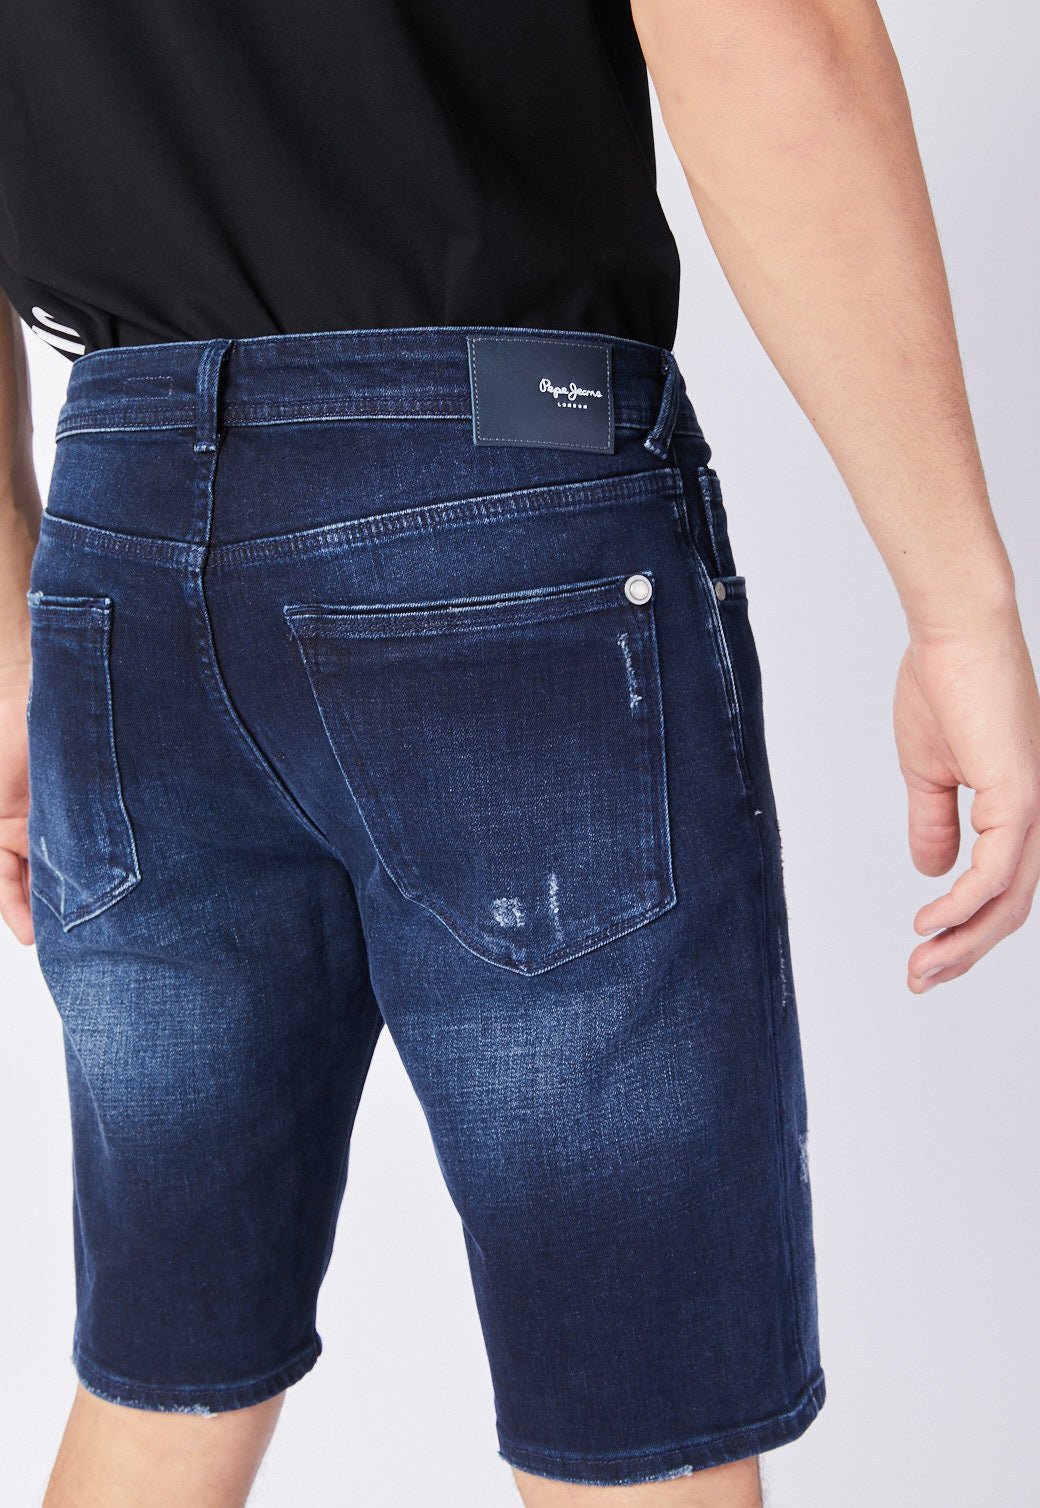 ג'ינס ברמודה משופשף לגברים - Pepe Jeans